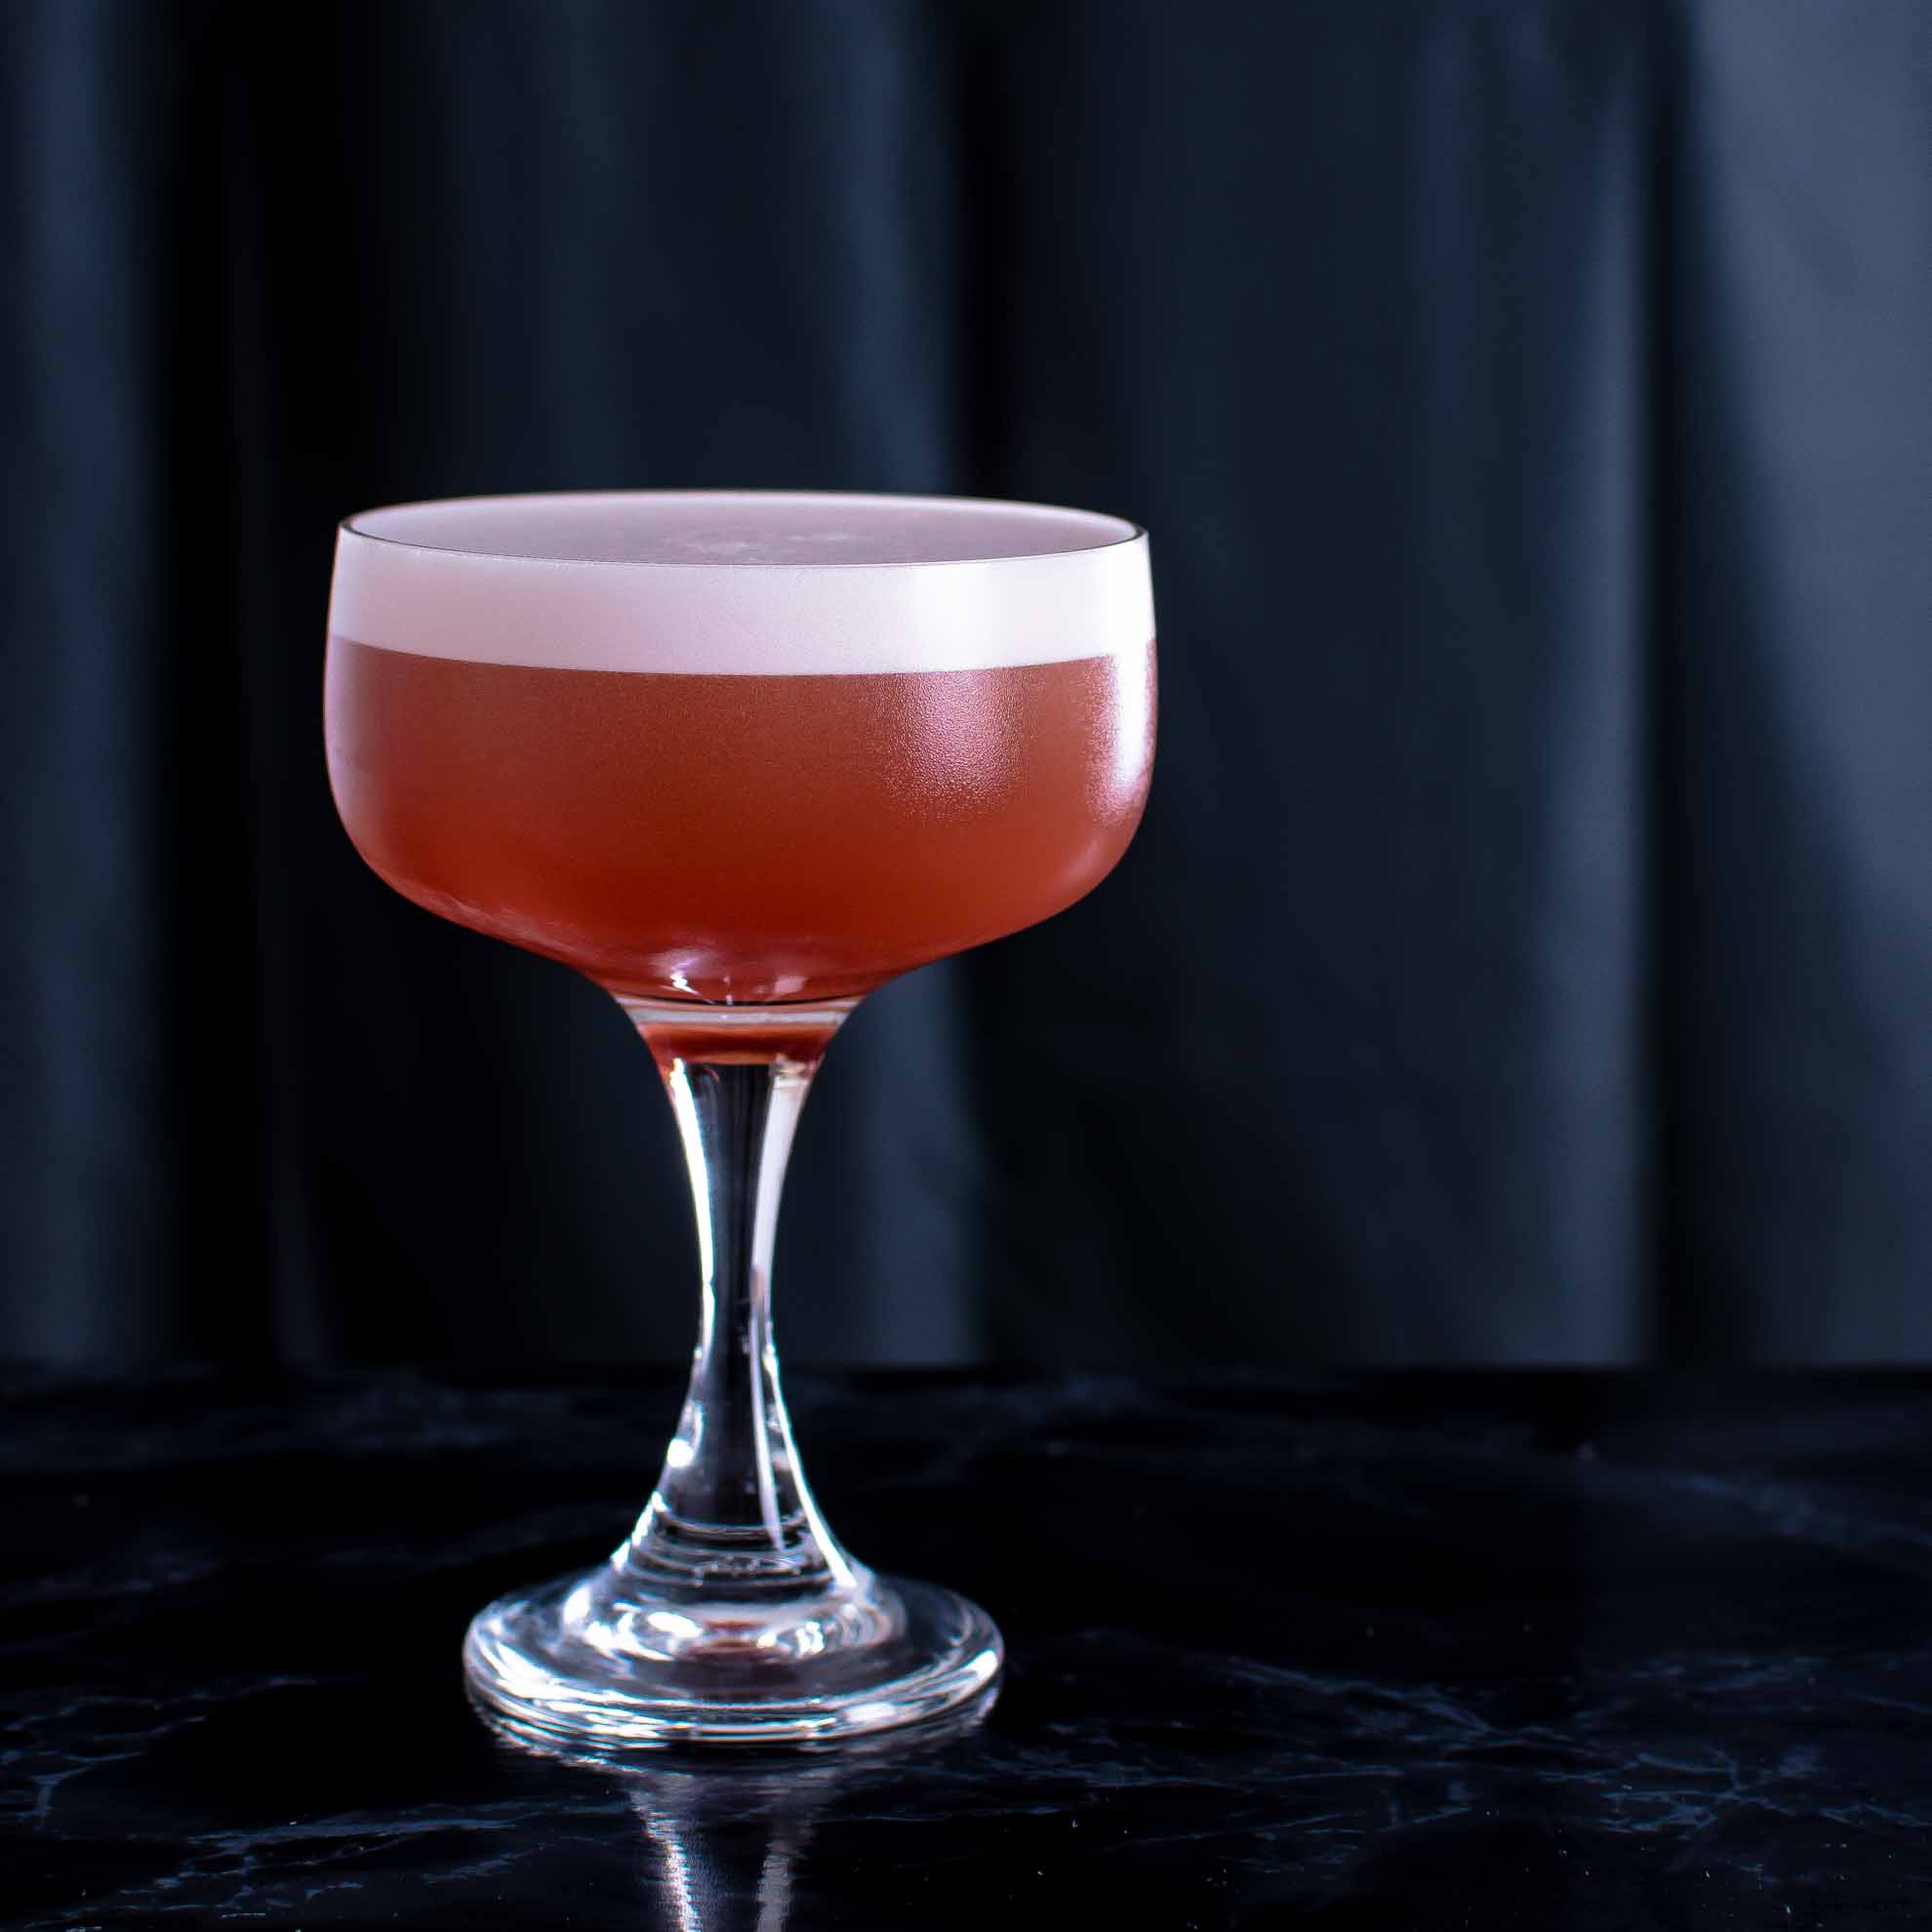 Gretchen Cherry Gin dans un cocktail de velours rouge.